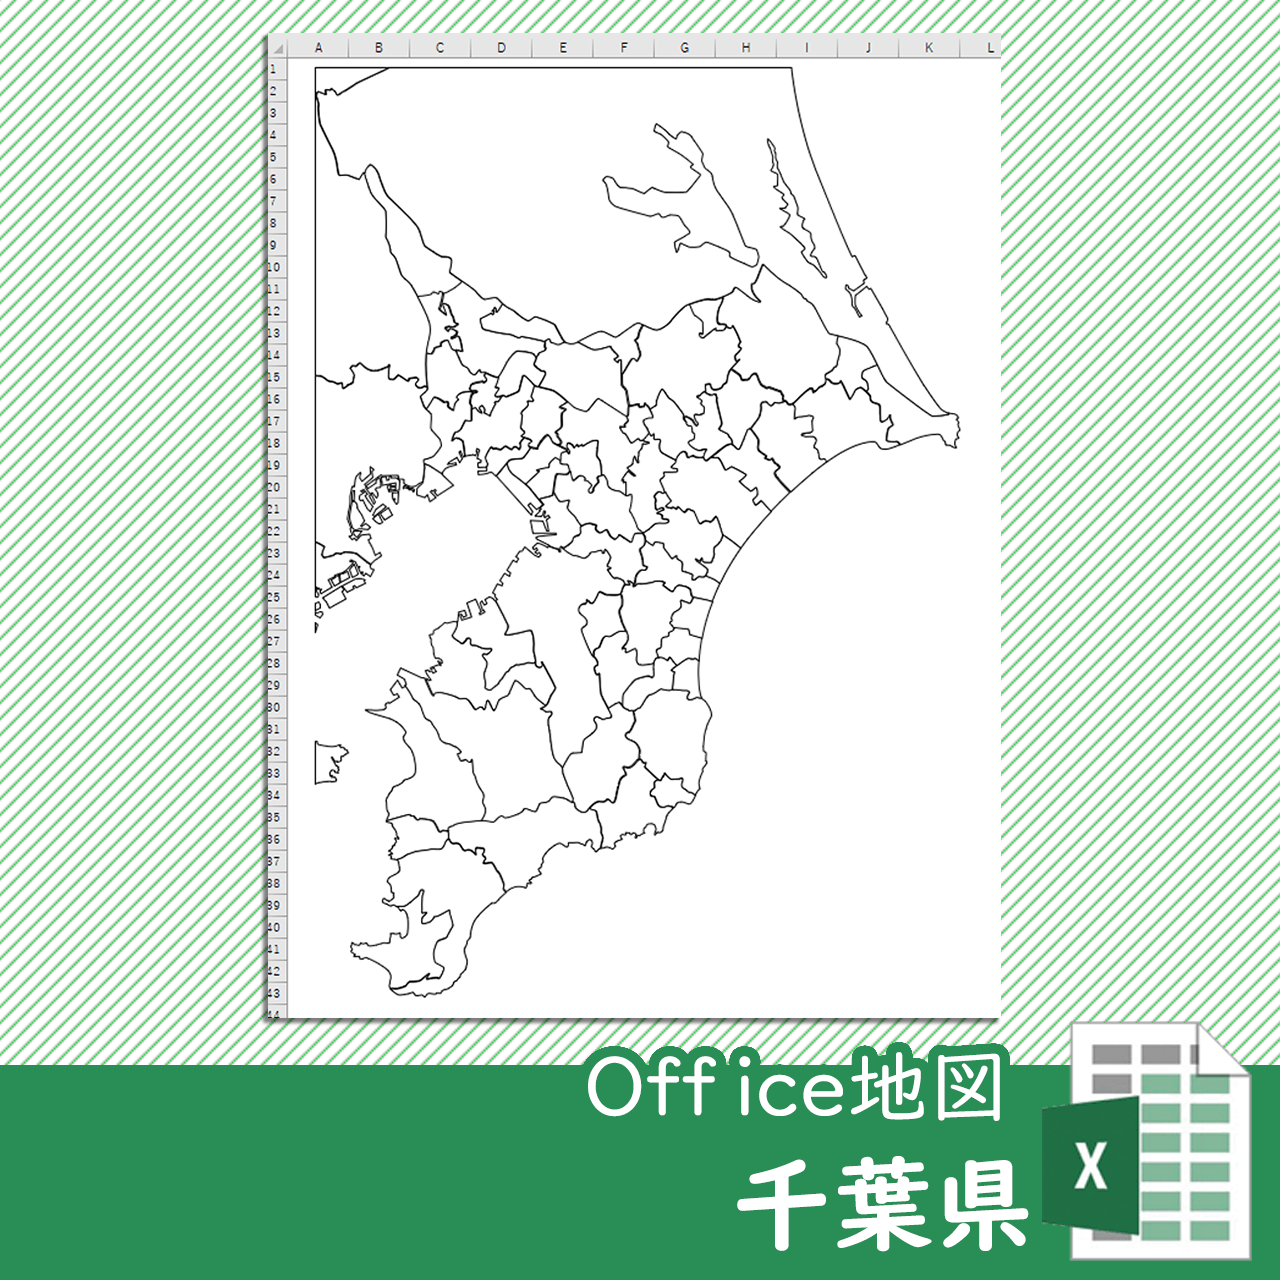 千葉県のoffice地図